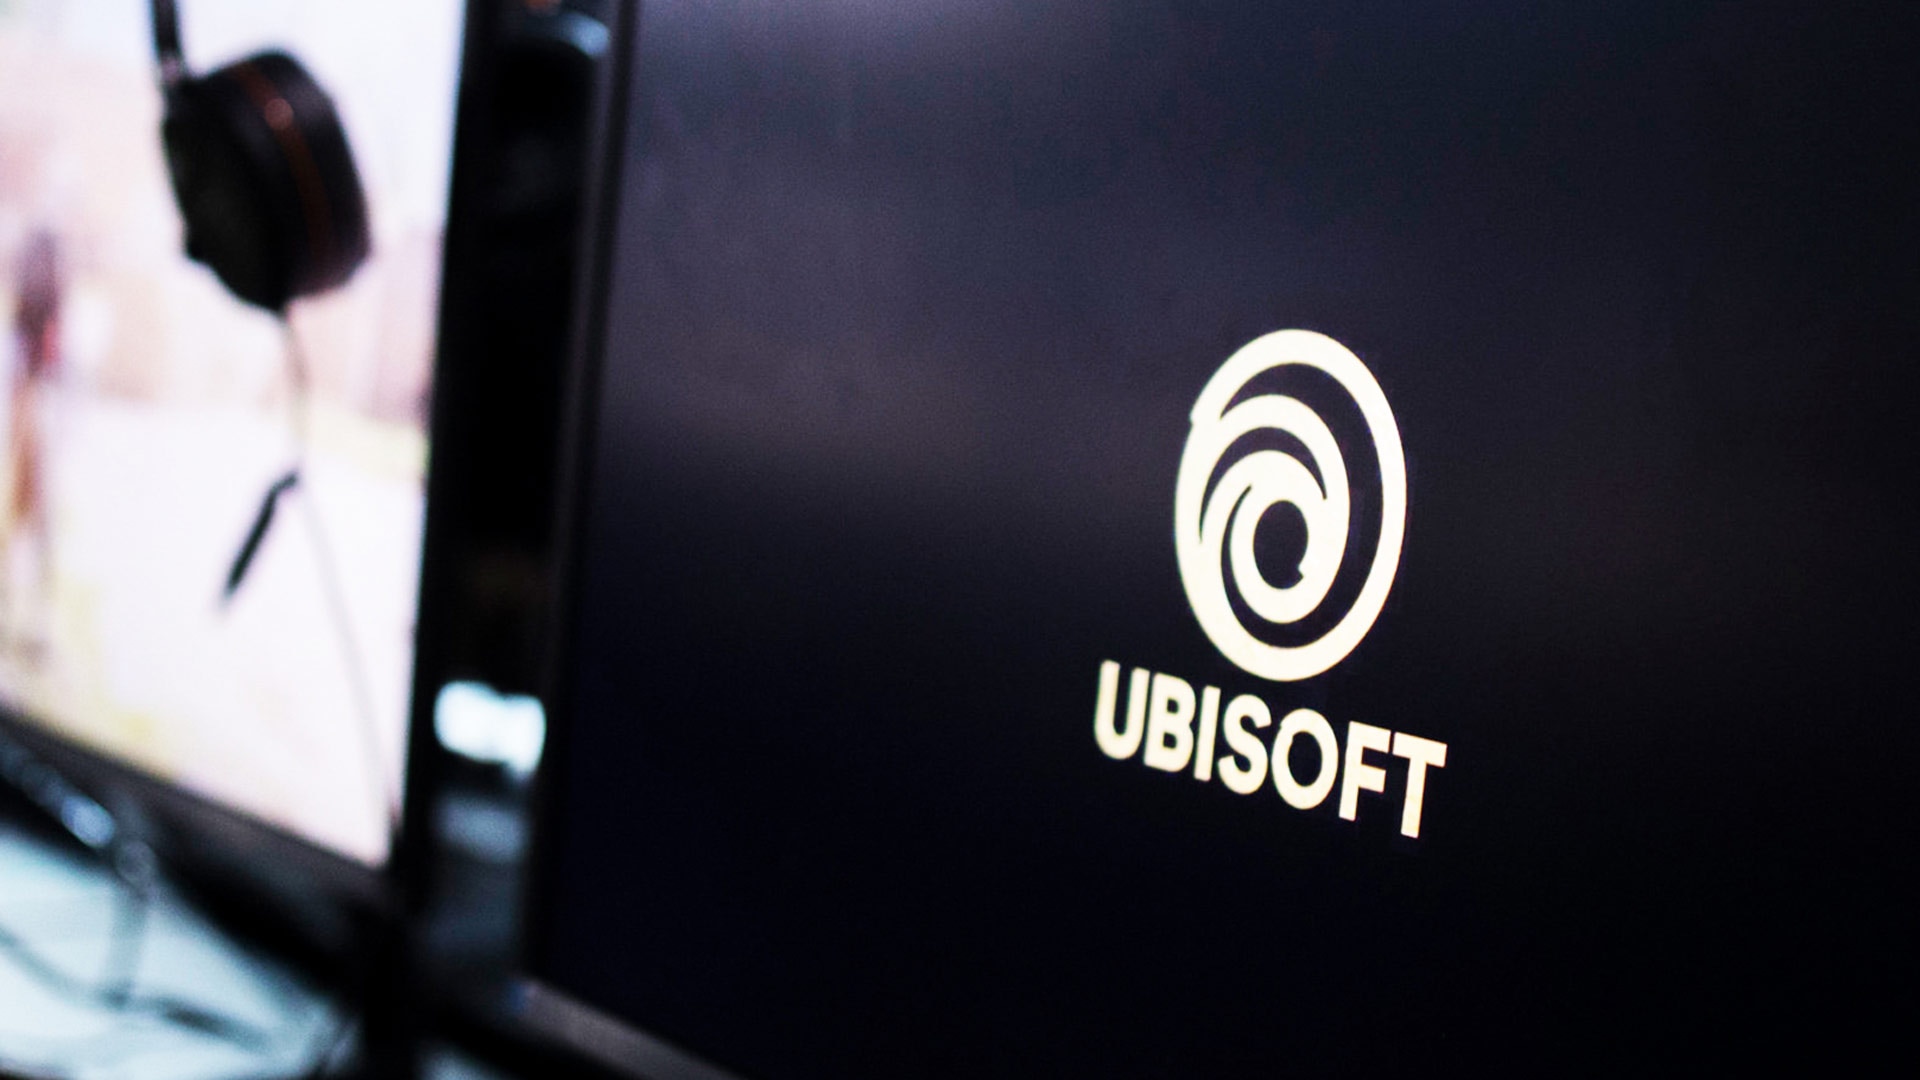 یک اتحادیه فرانسوی به دنبال شکایت از شرکت Ubisoft است